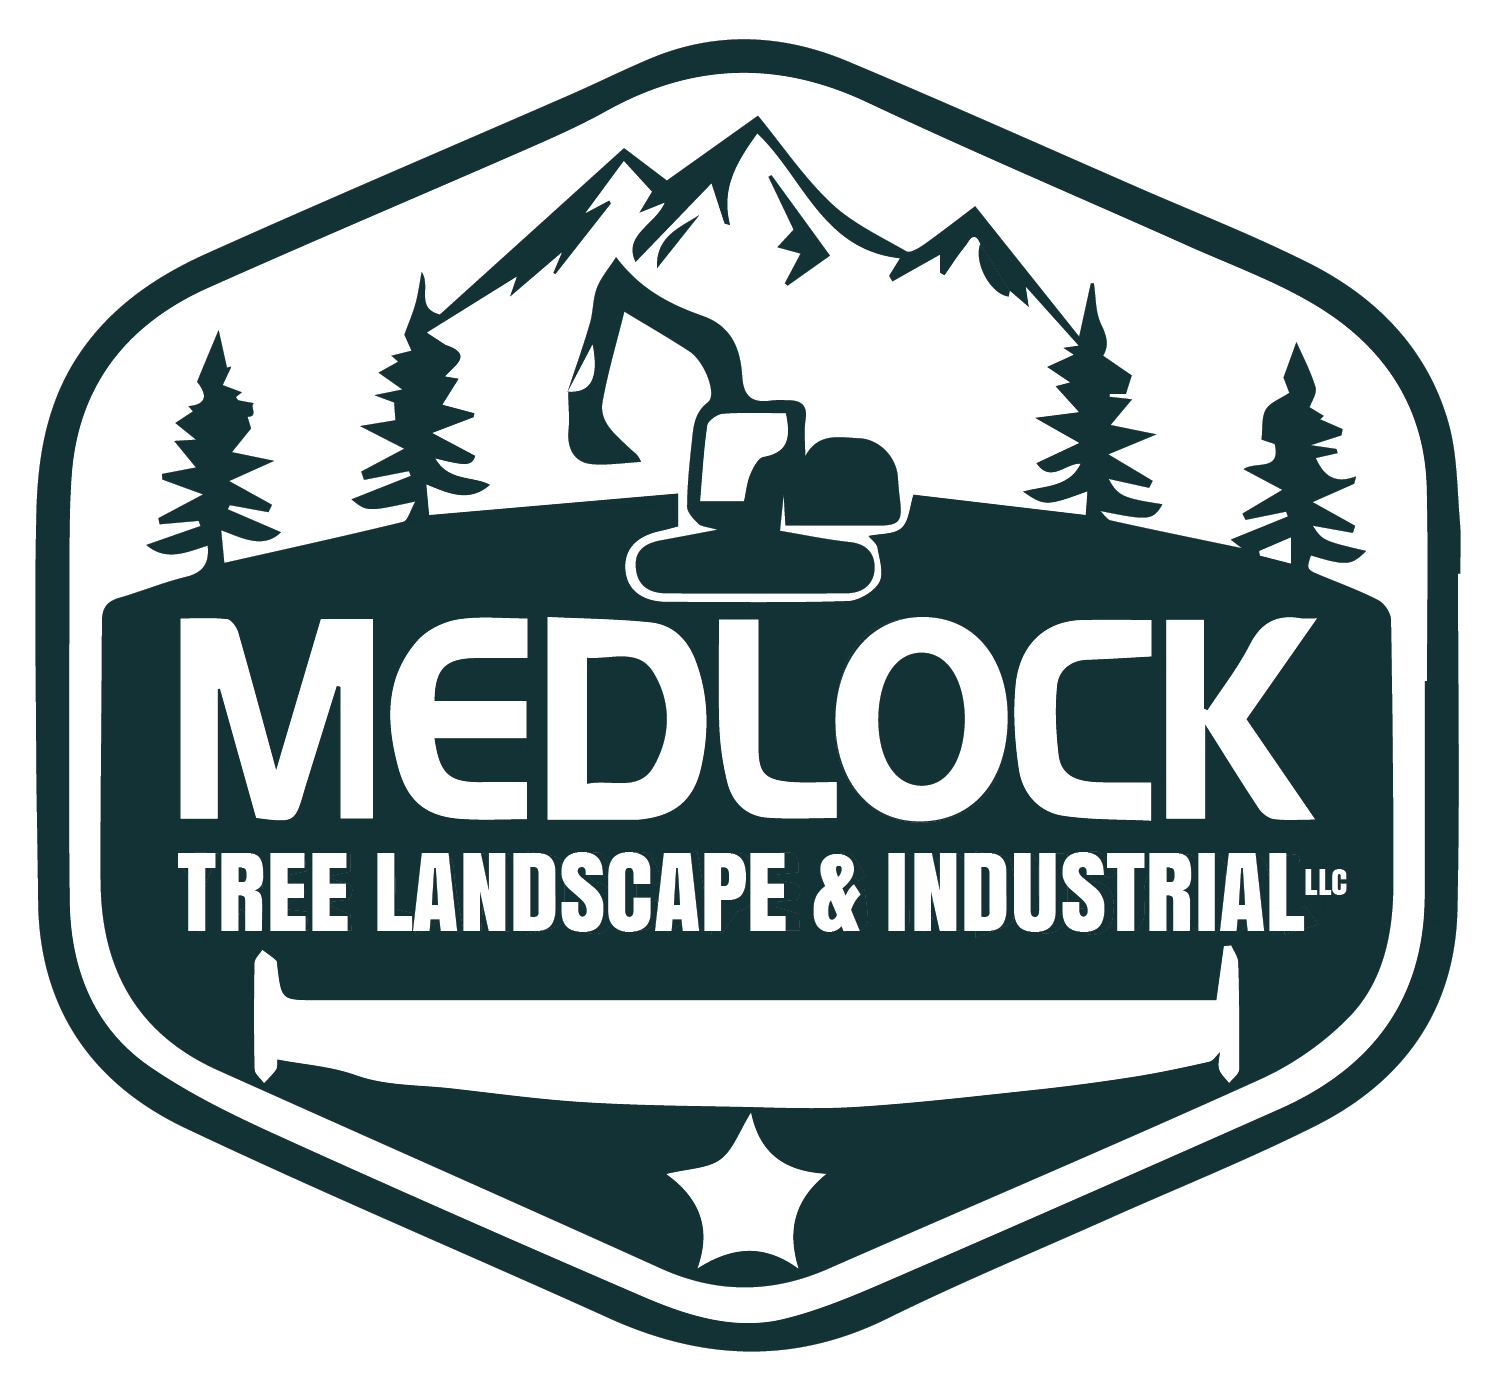 Medlock Tree Landscape & Industrial LLC Logo